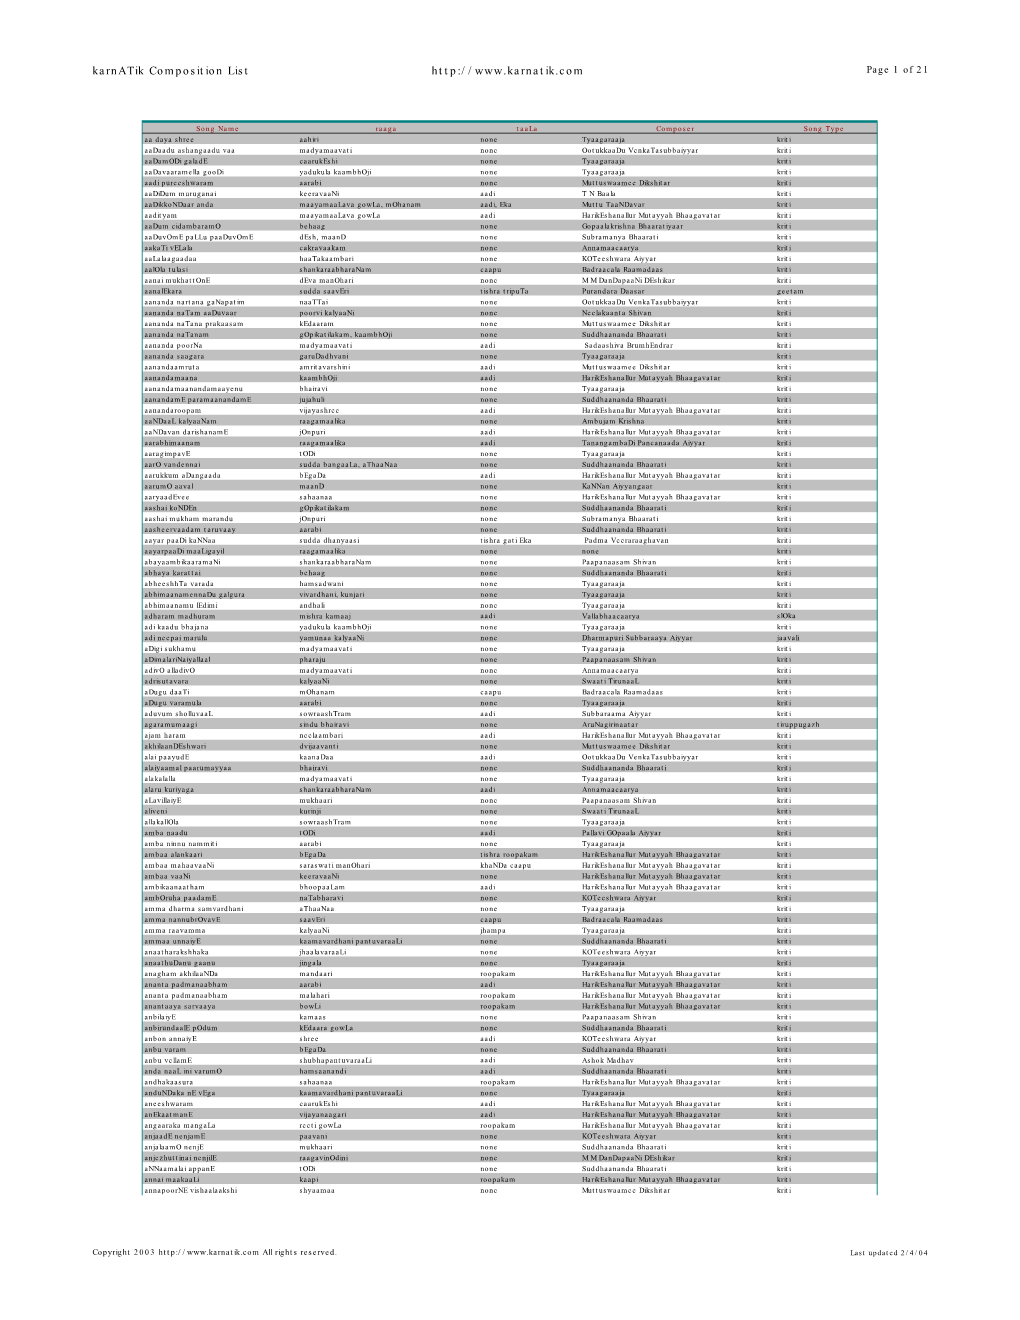 Karnatik Composition List Page 1 of 21